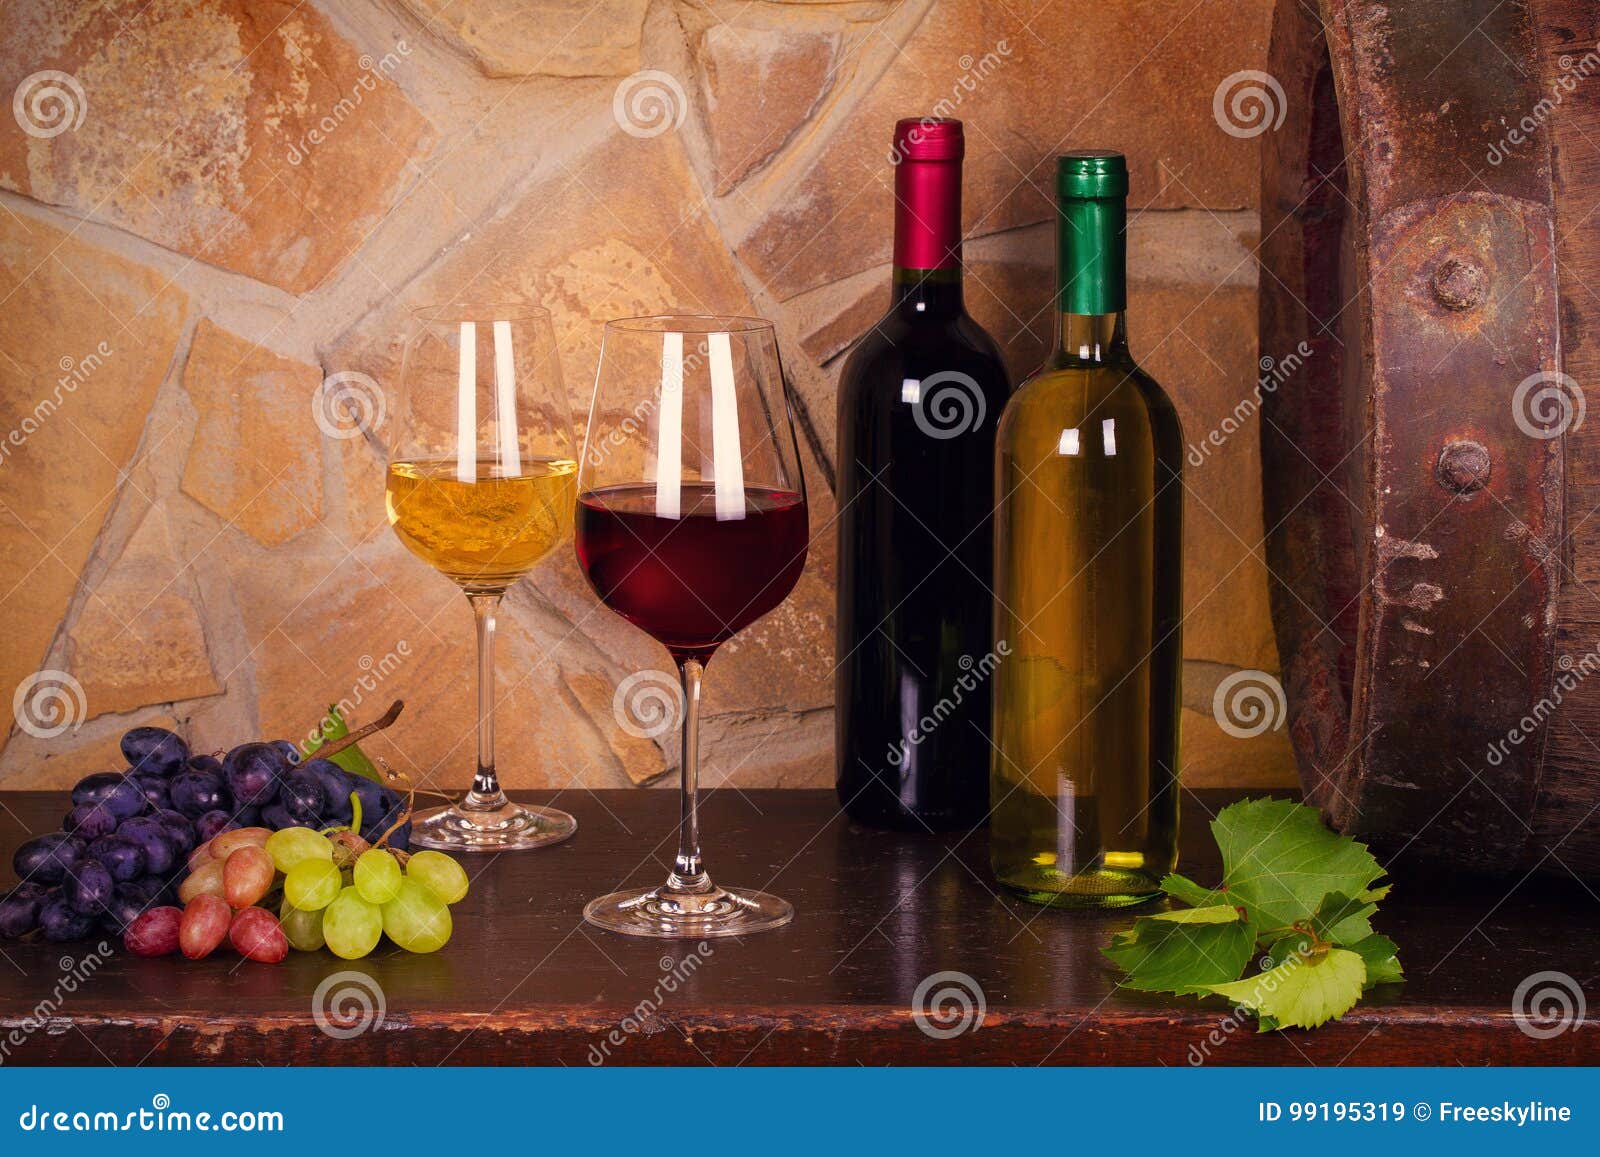 Botellas y vidrios de rojo y de blanco en la bodega, barril de vino viejo. Botellas y vidrios de vino blanco rojo y con la uva en la bodega, barril de vino viejo Comida y concepto de las bebidas